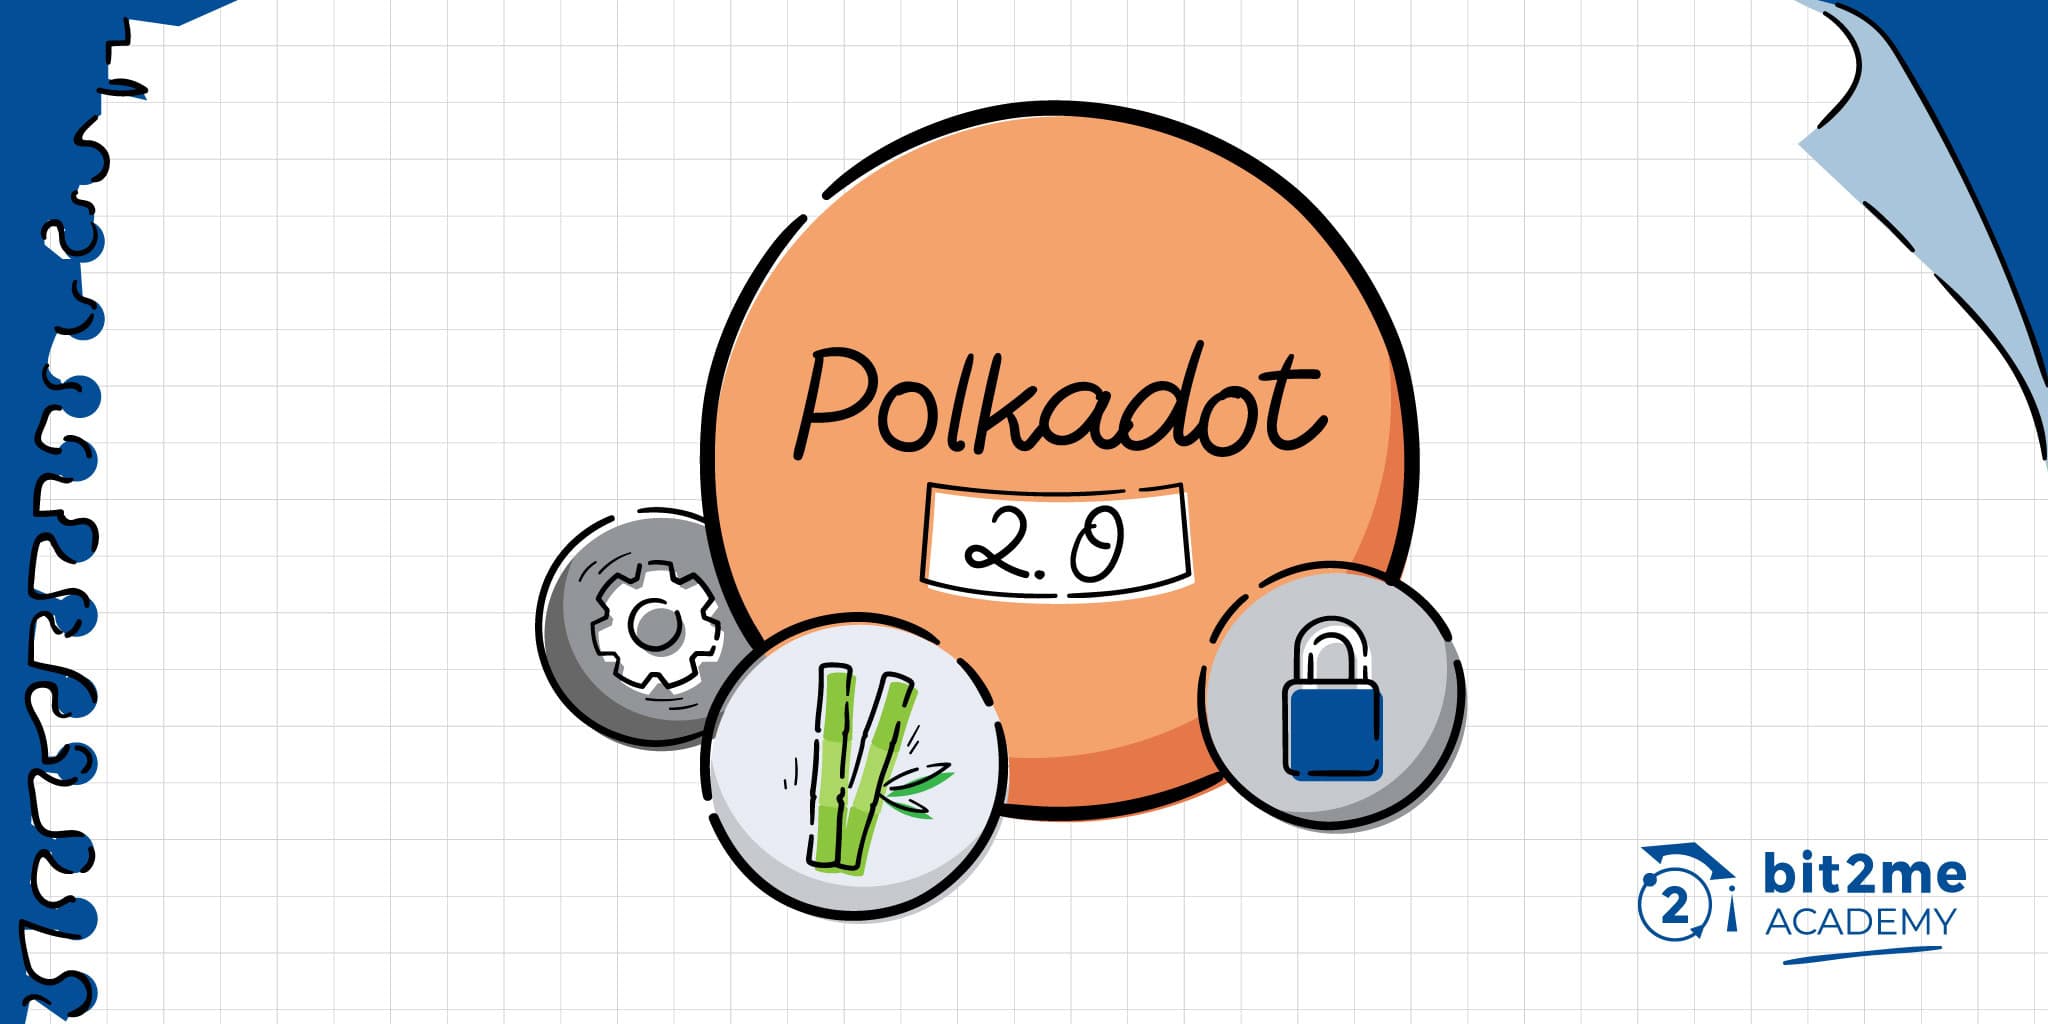 ¿Qué es Polkadot 2.0?